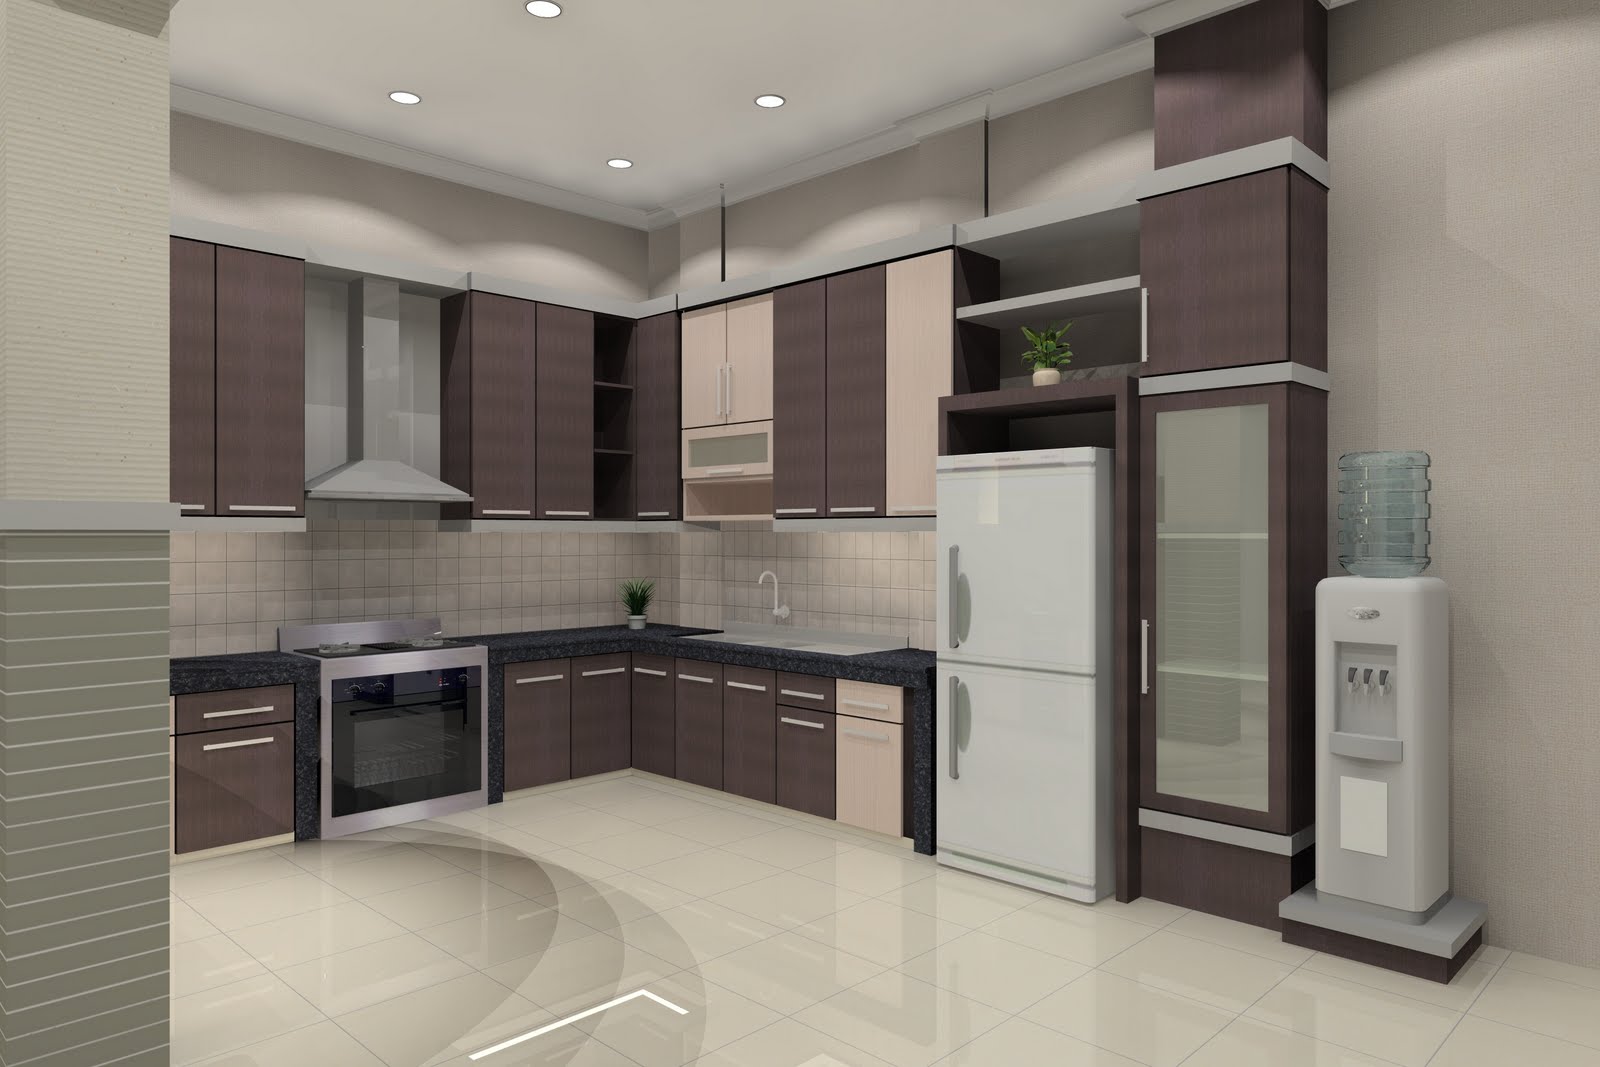 32 Kumpulan Gambar Dapur Rumah Minimalis Terbaru 2015 Loracd Rumah